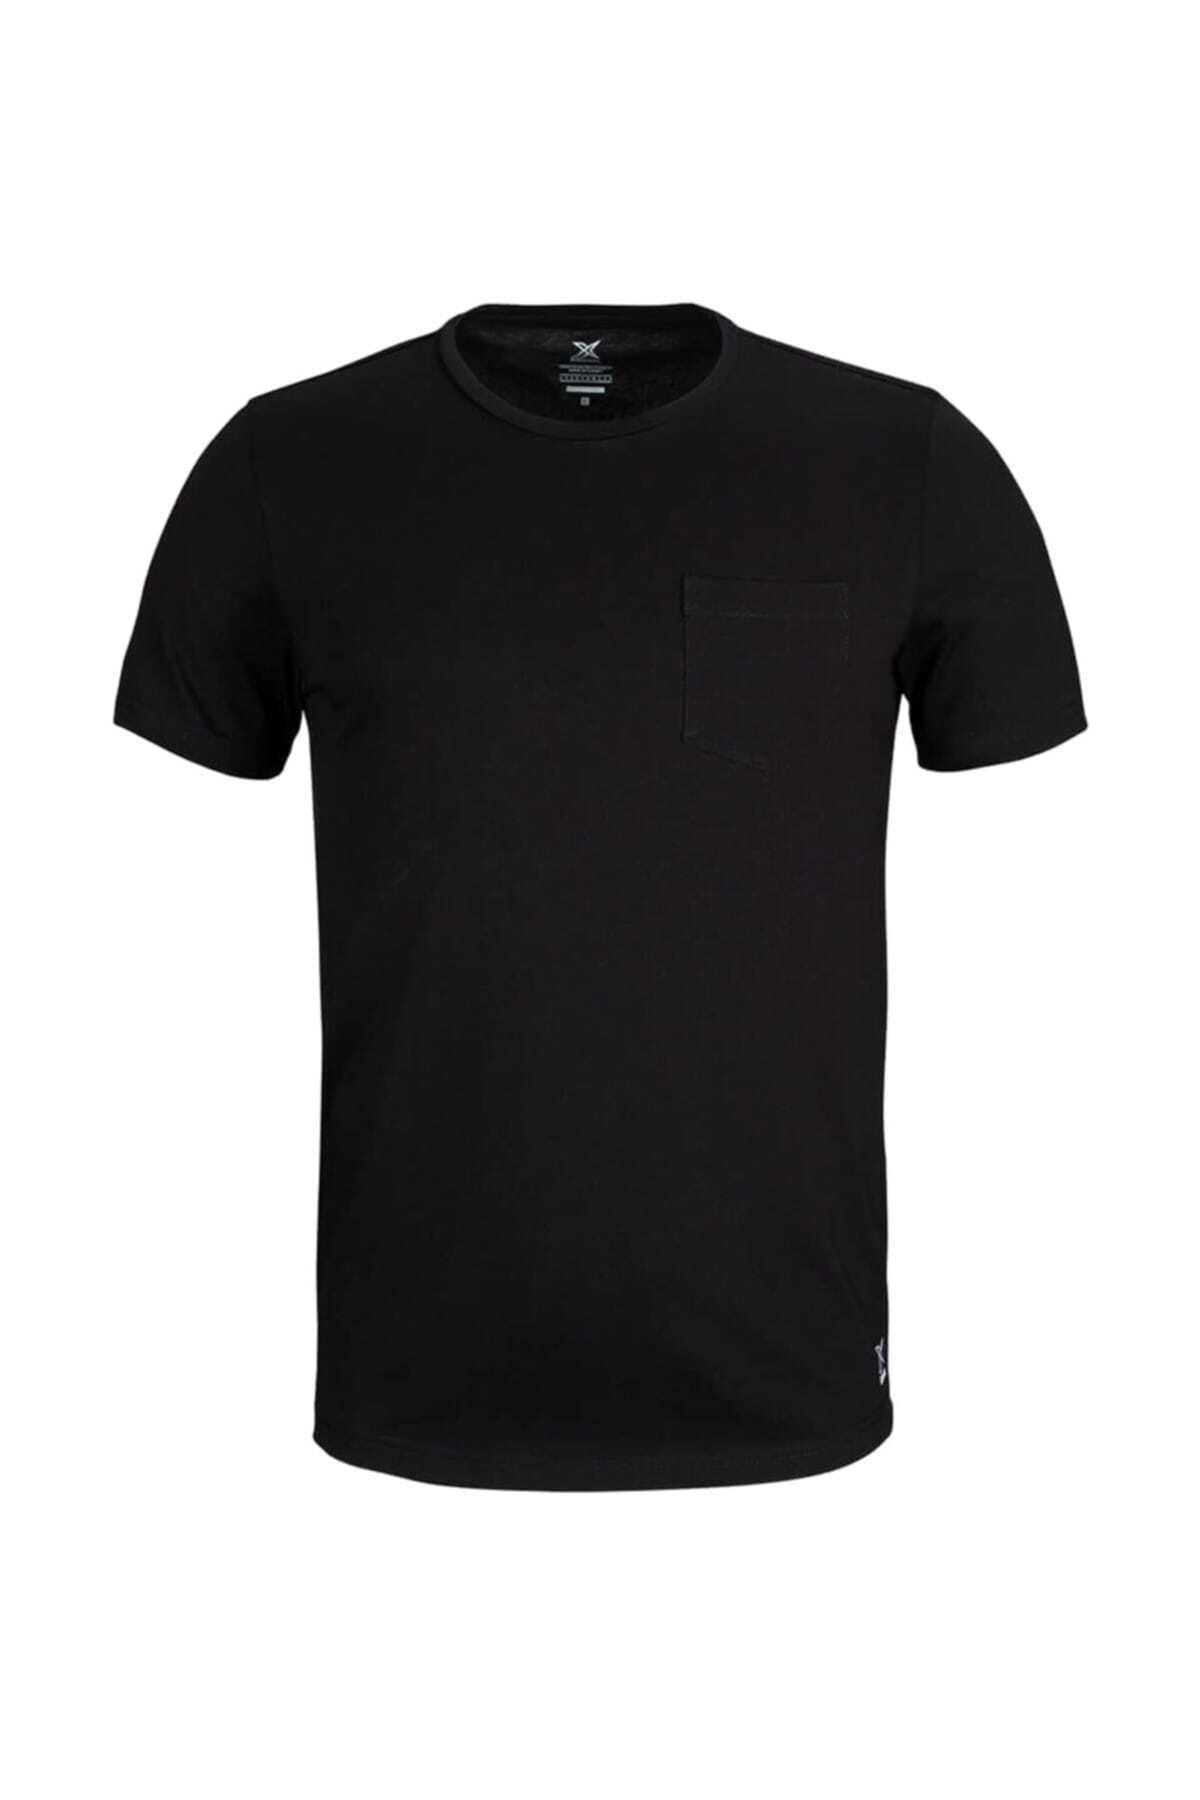 Kinetix Robb 3 T-shirt Siyah Erkek T-Shirt 100380689